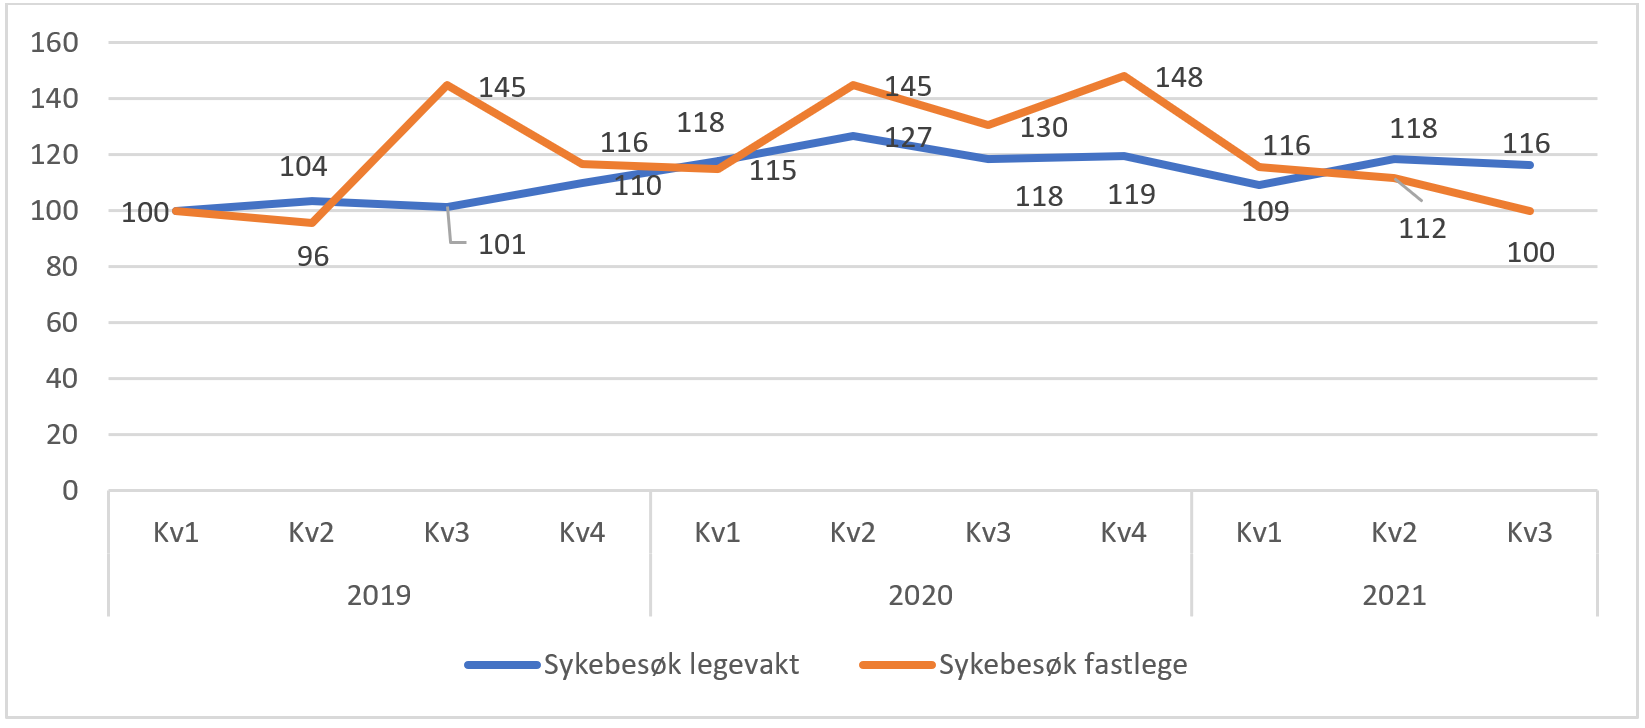 Utvikling i antall sykebesøk av fastlege og legevakt. pr. kvartal for Norge totalt. Prosent endring fra 1.kvartal 2019 til 3.kvartal 2021. 1. kvartal 2019 er satt som 100 prosent.